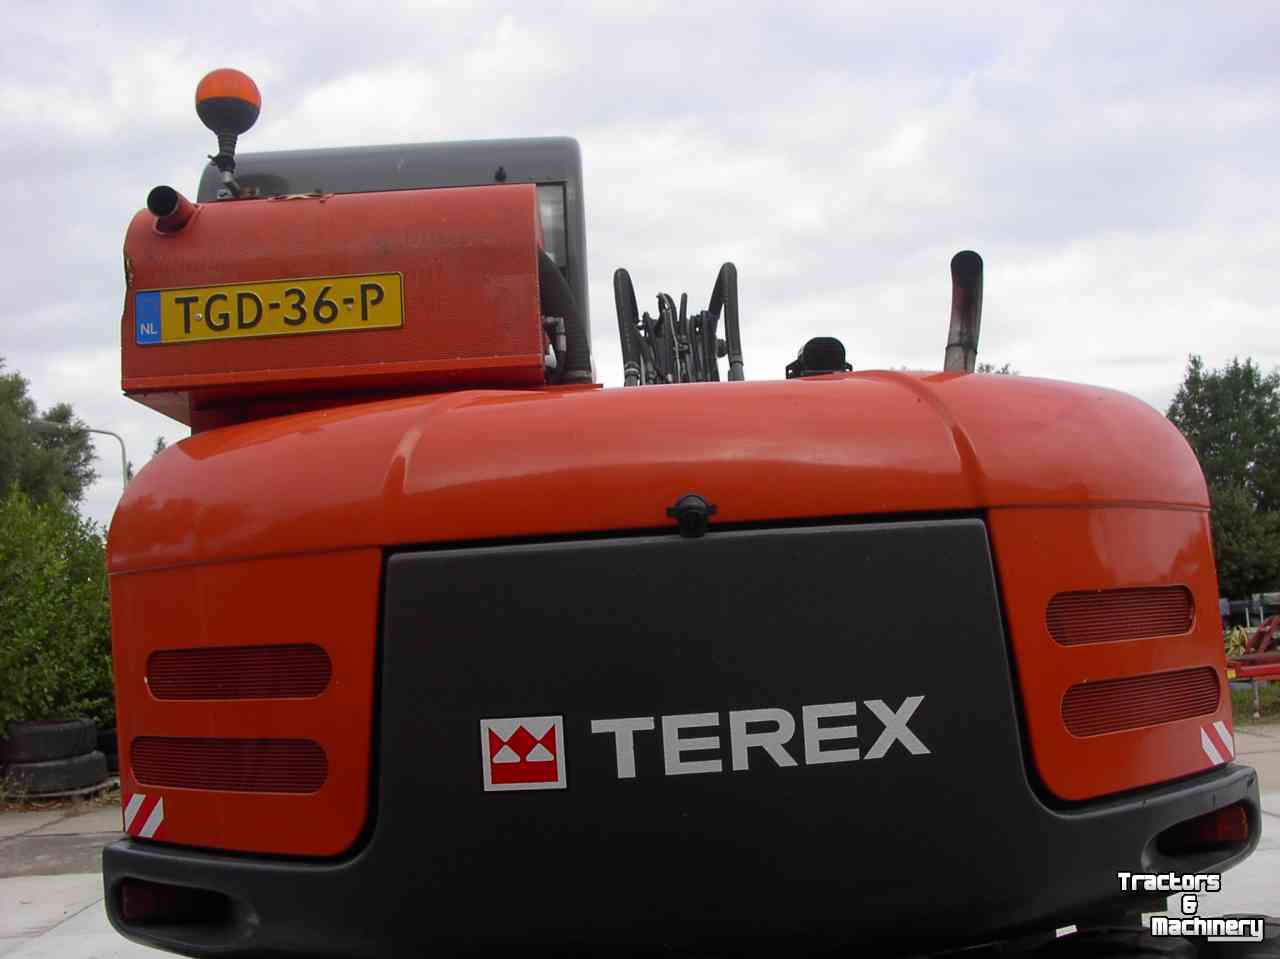 Excavator mobile Terex TW 85